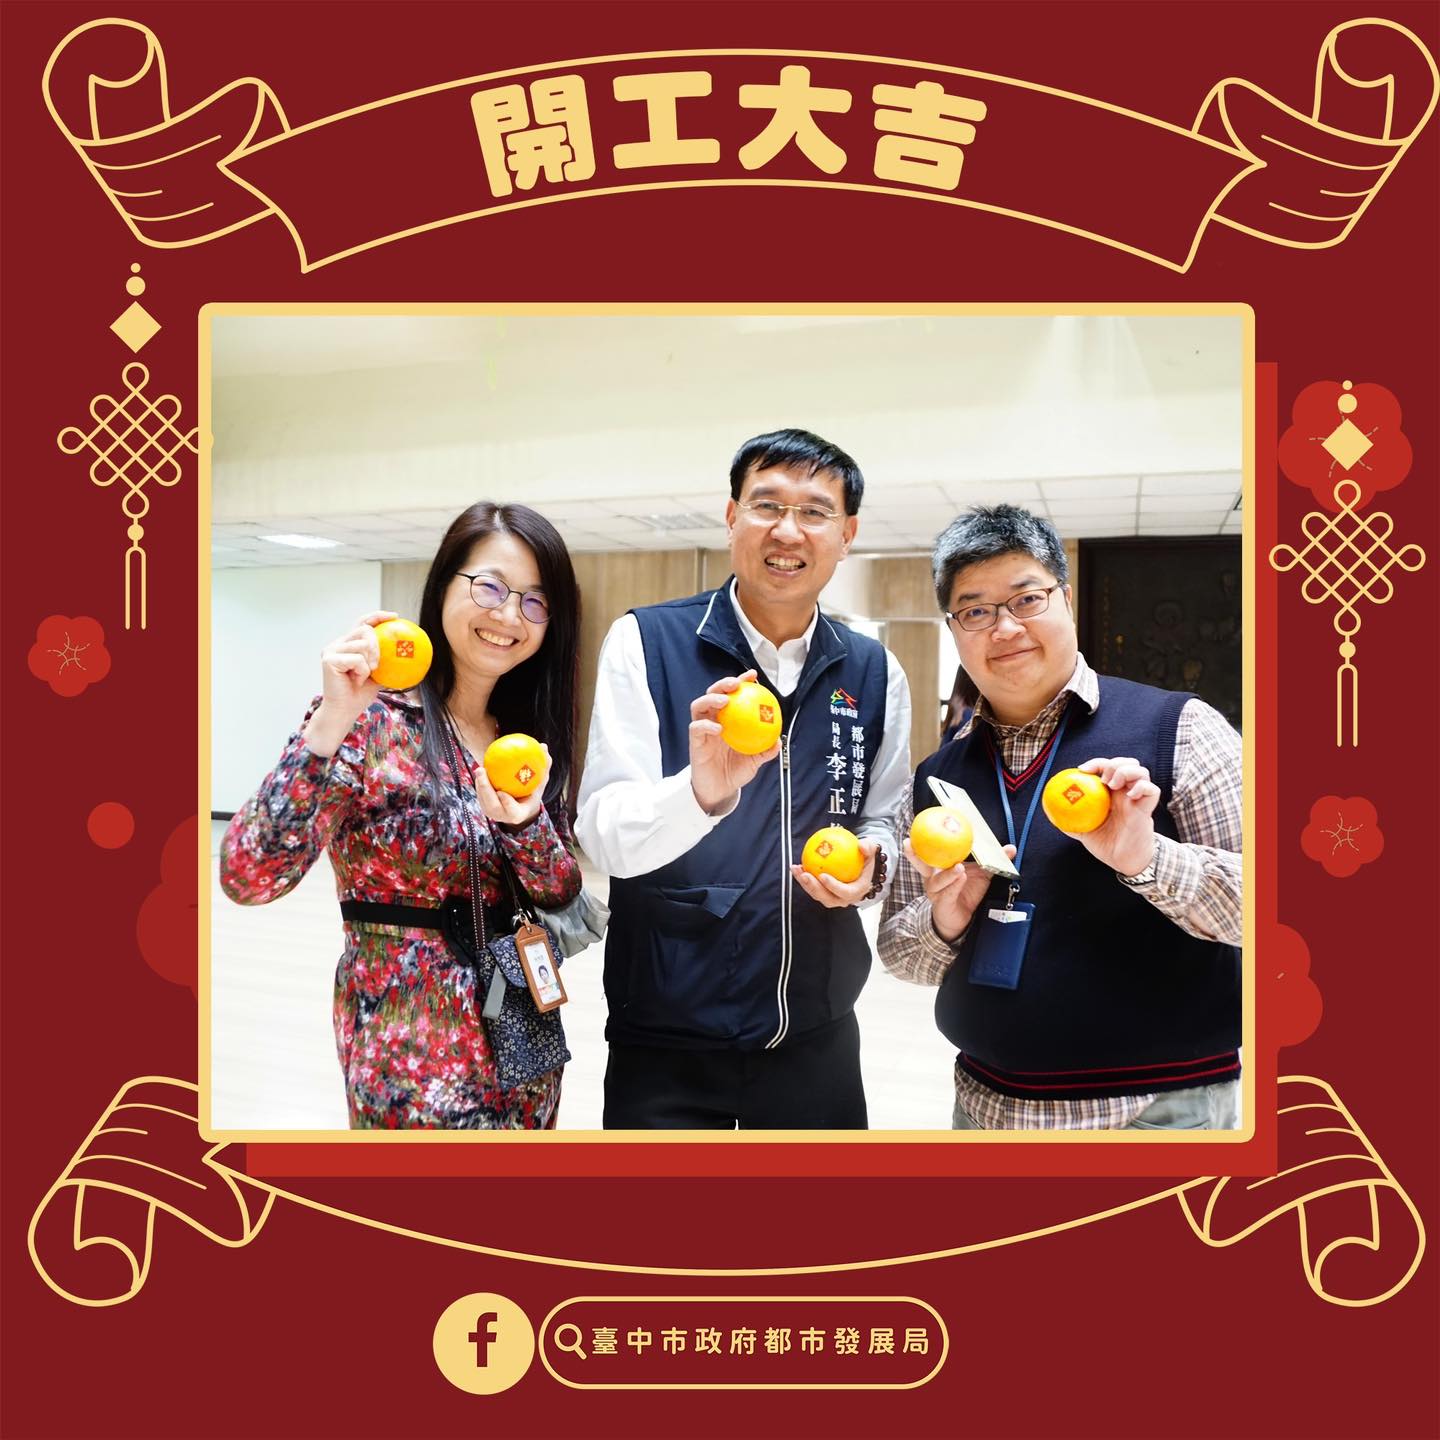 在這次的團拜活動中，李正偉局長特別準備了茂谷柑作為禮物，向全體同仁表達了新年的祝福